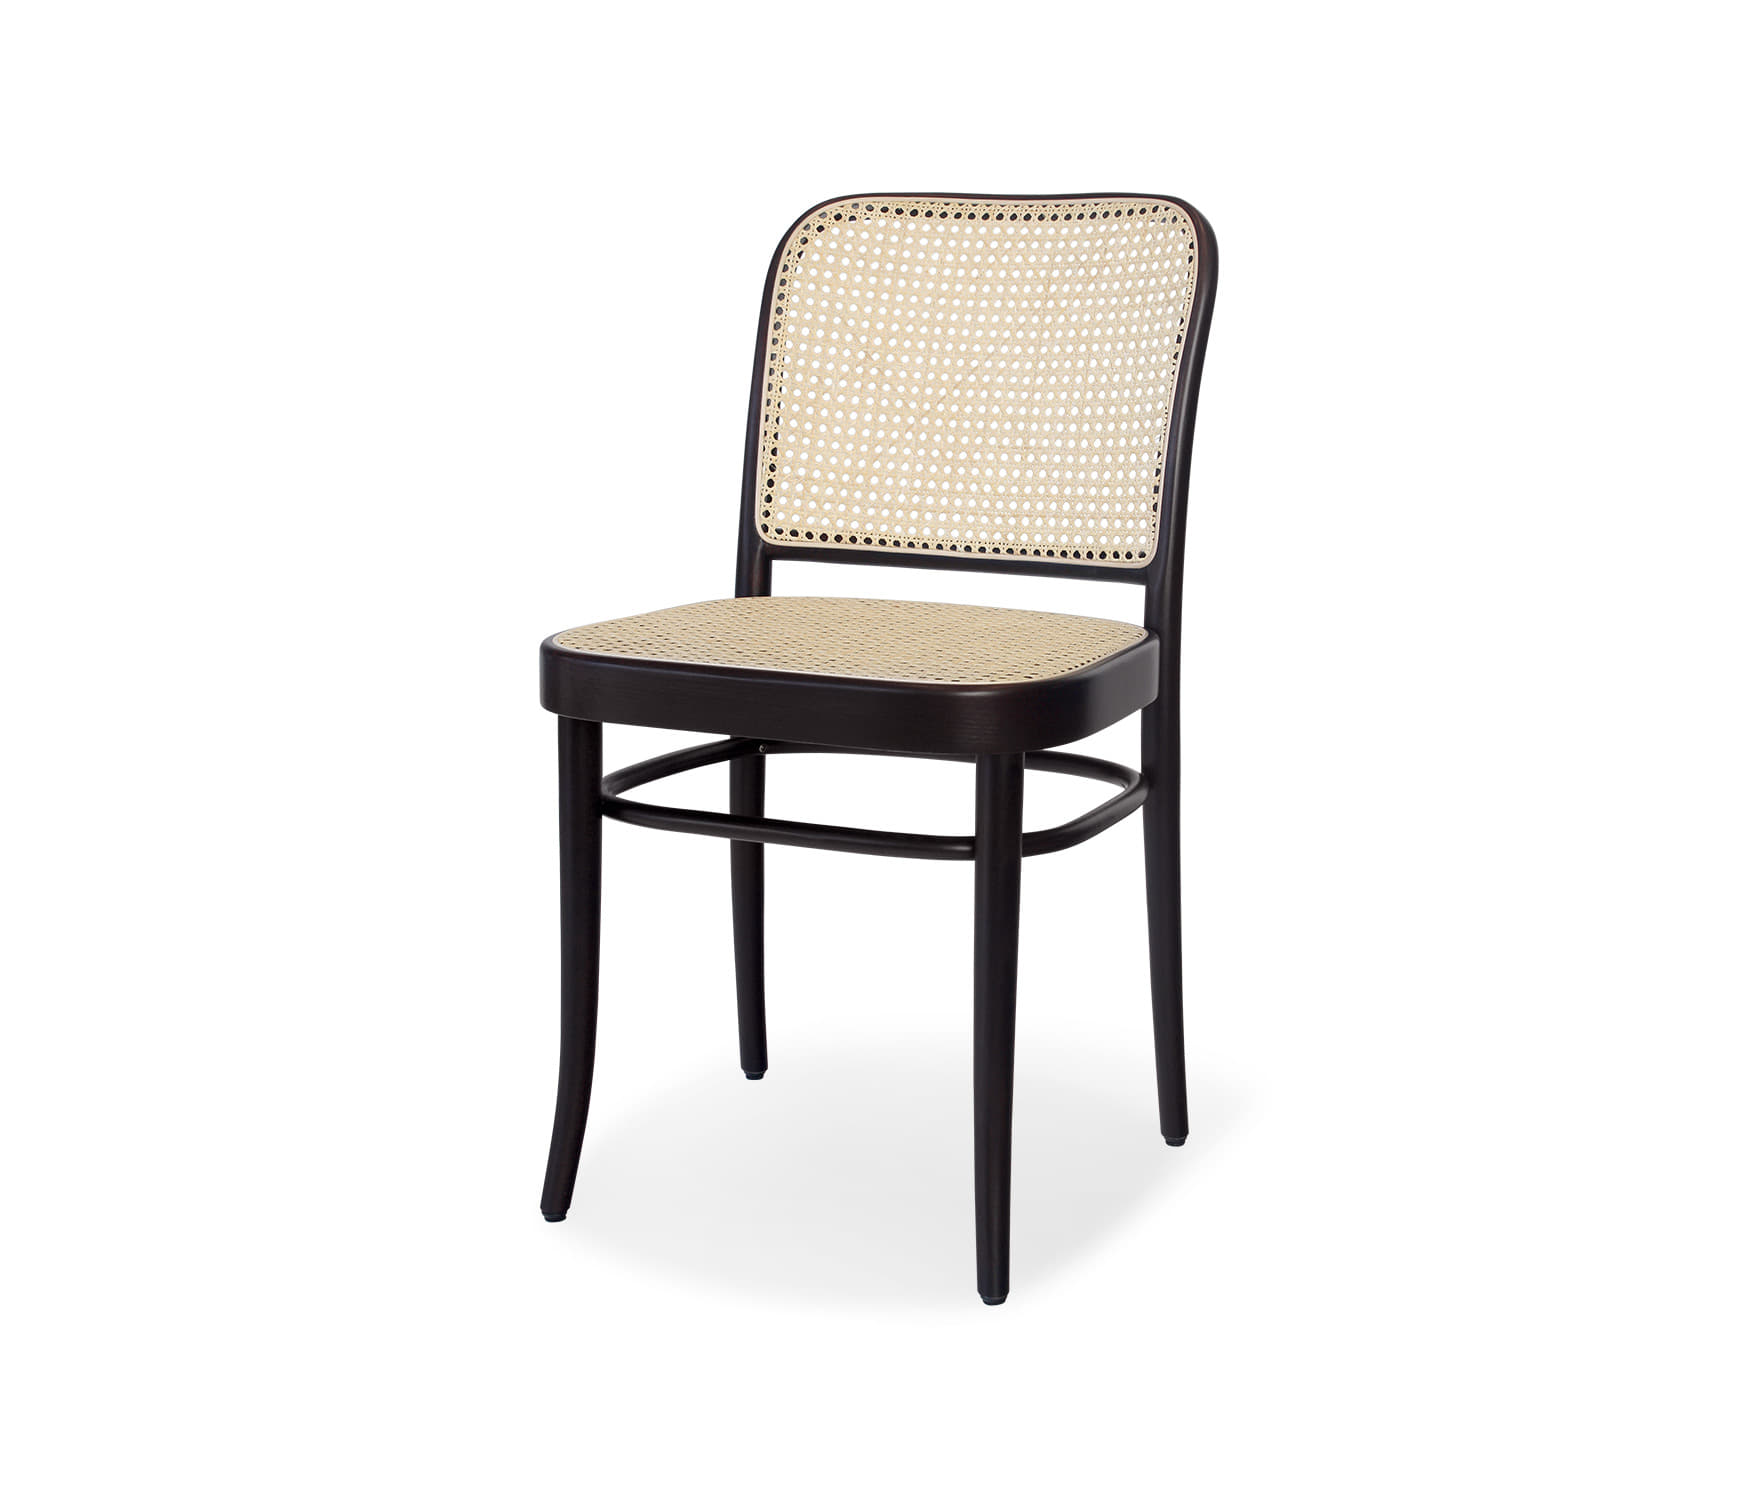 Chair 811 - Coffee/Cane